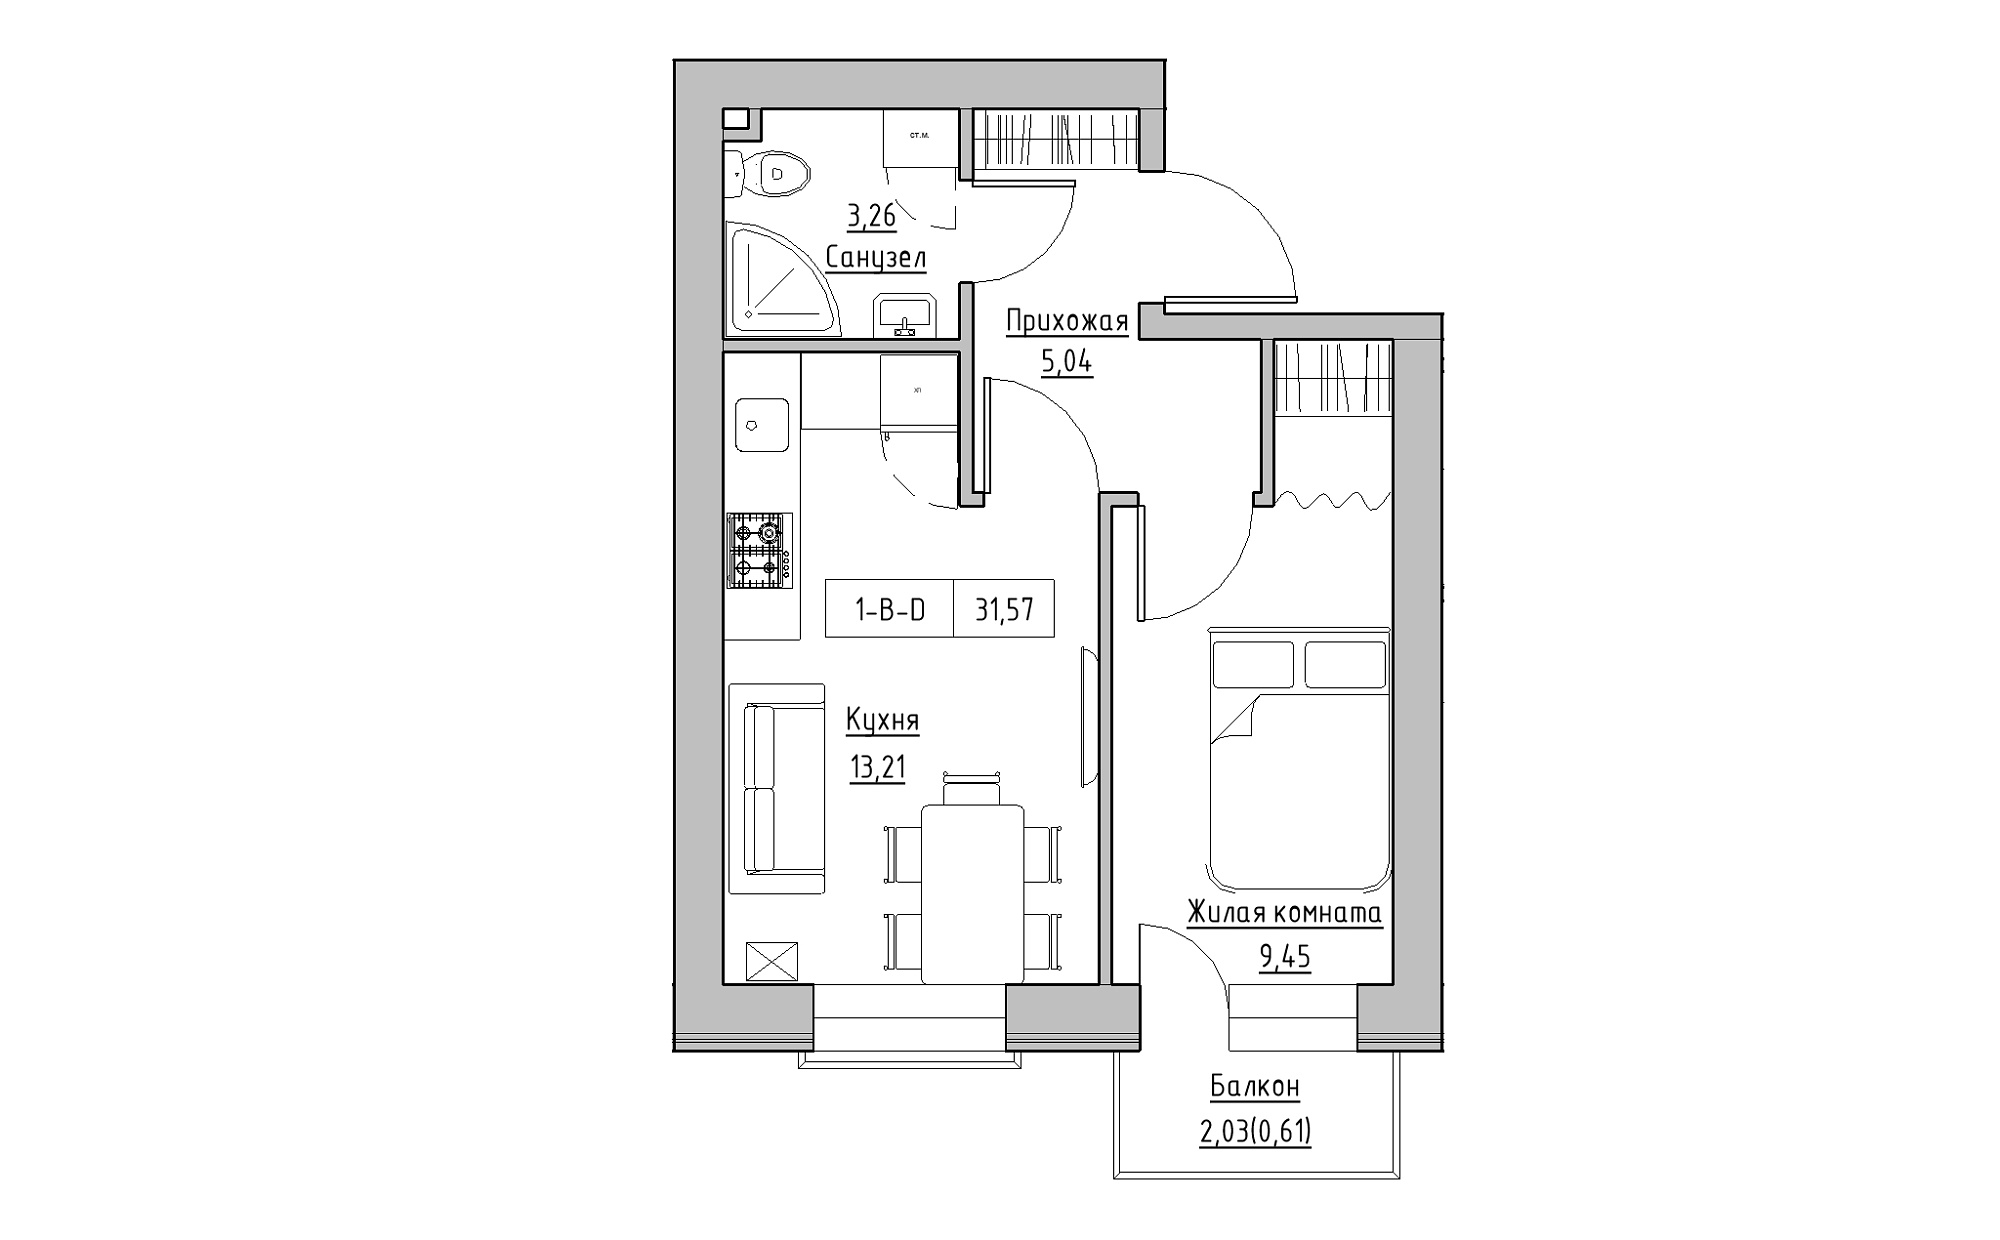 Планування 1-к квартира площею 31.57м2, KS-022-02/0003.